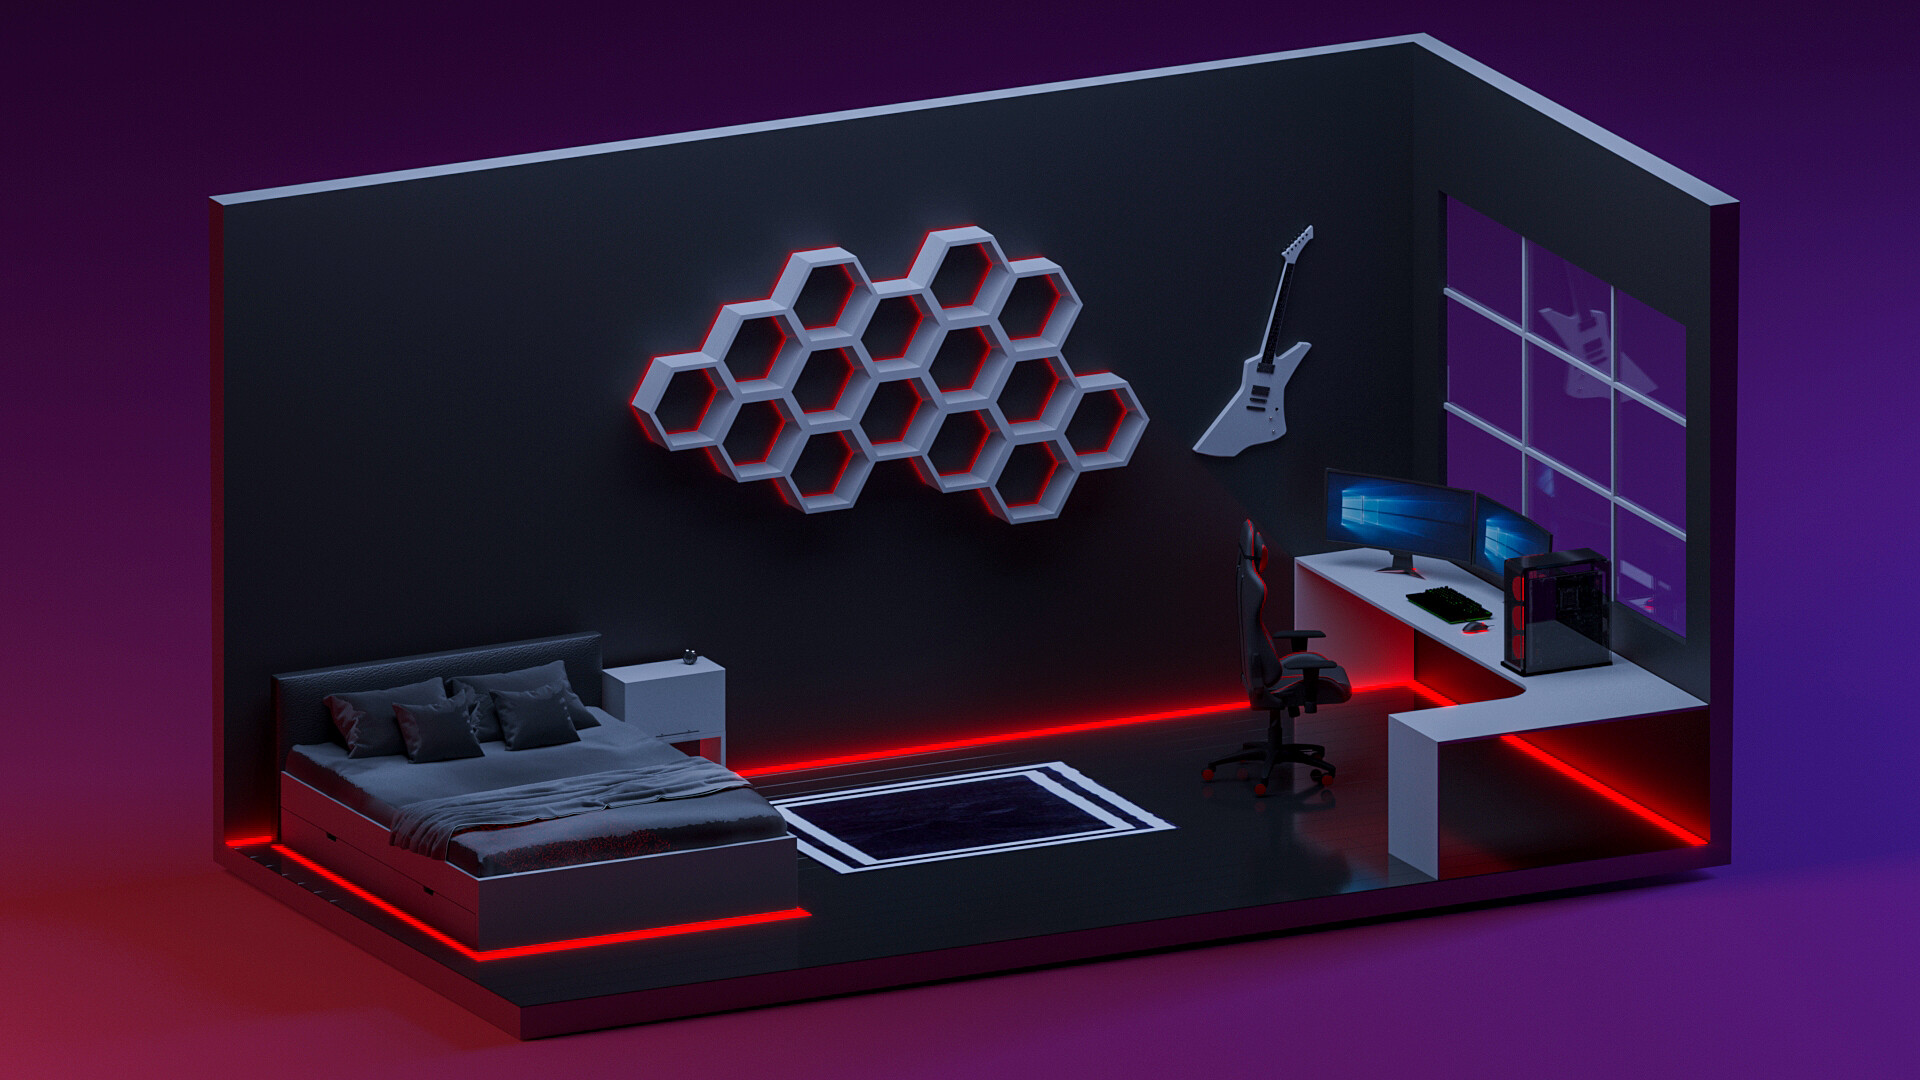 ArtStation - 3D Isometric Game Room Design